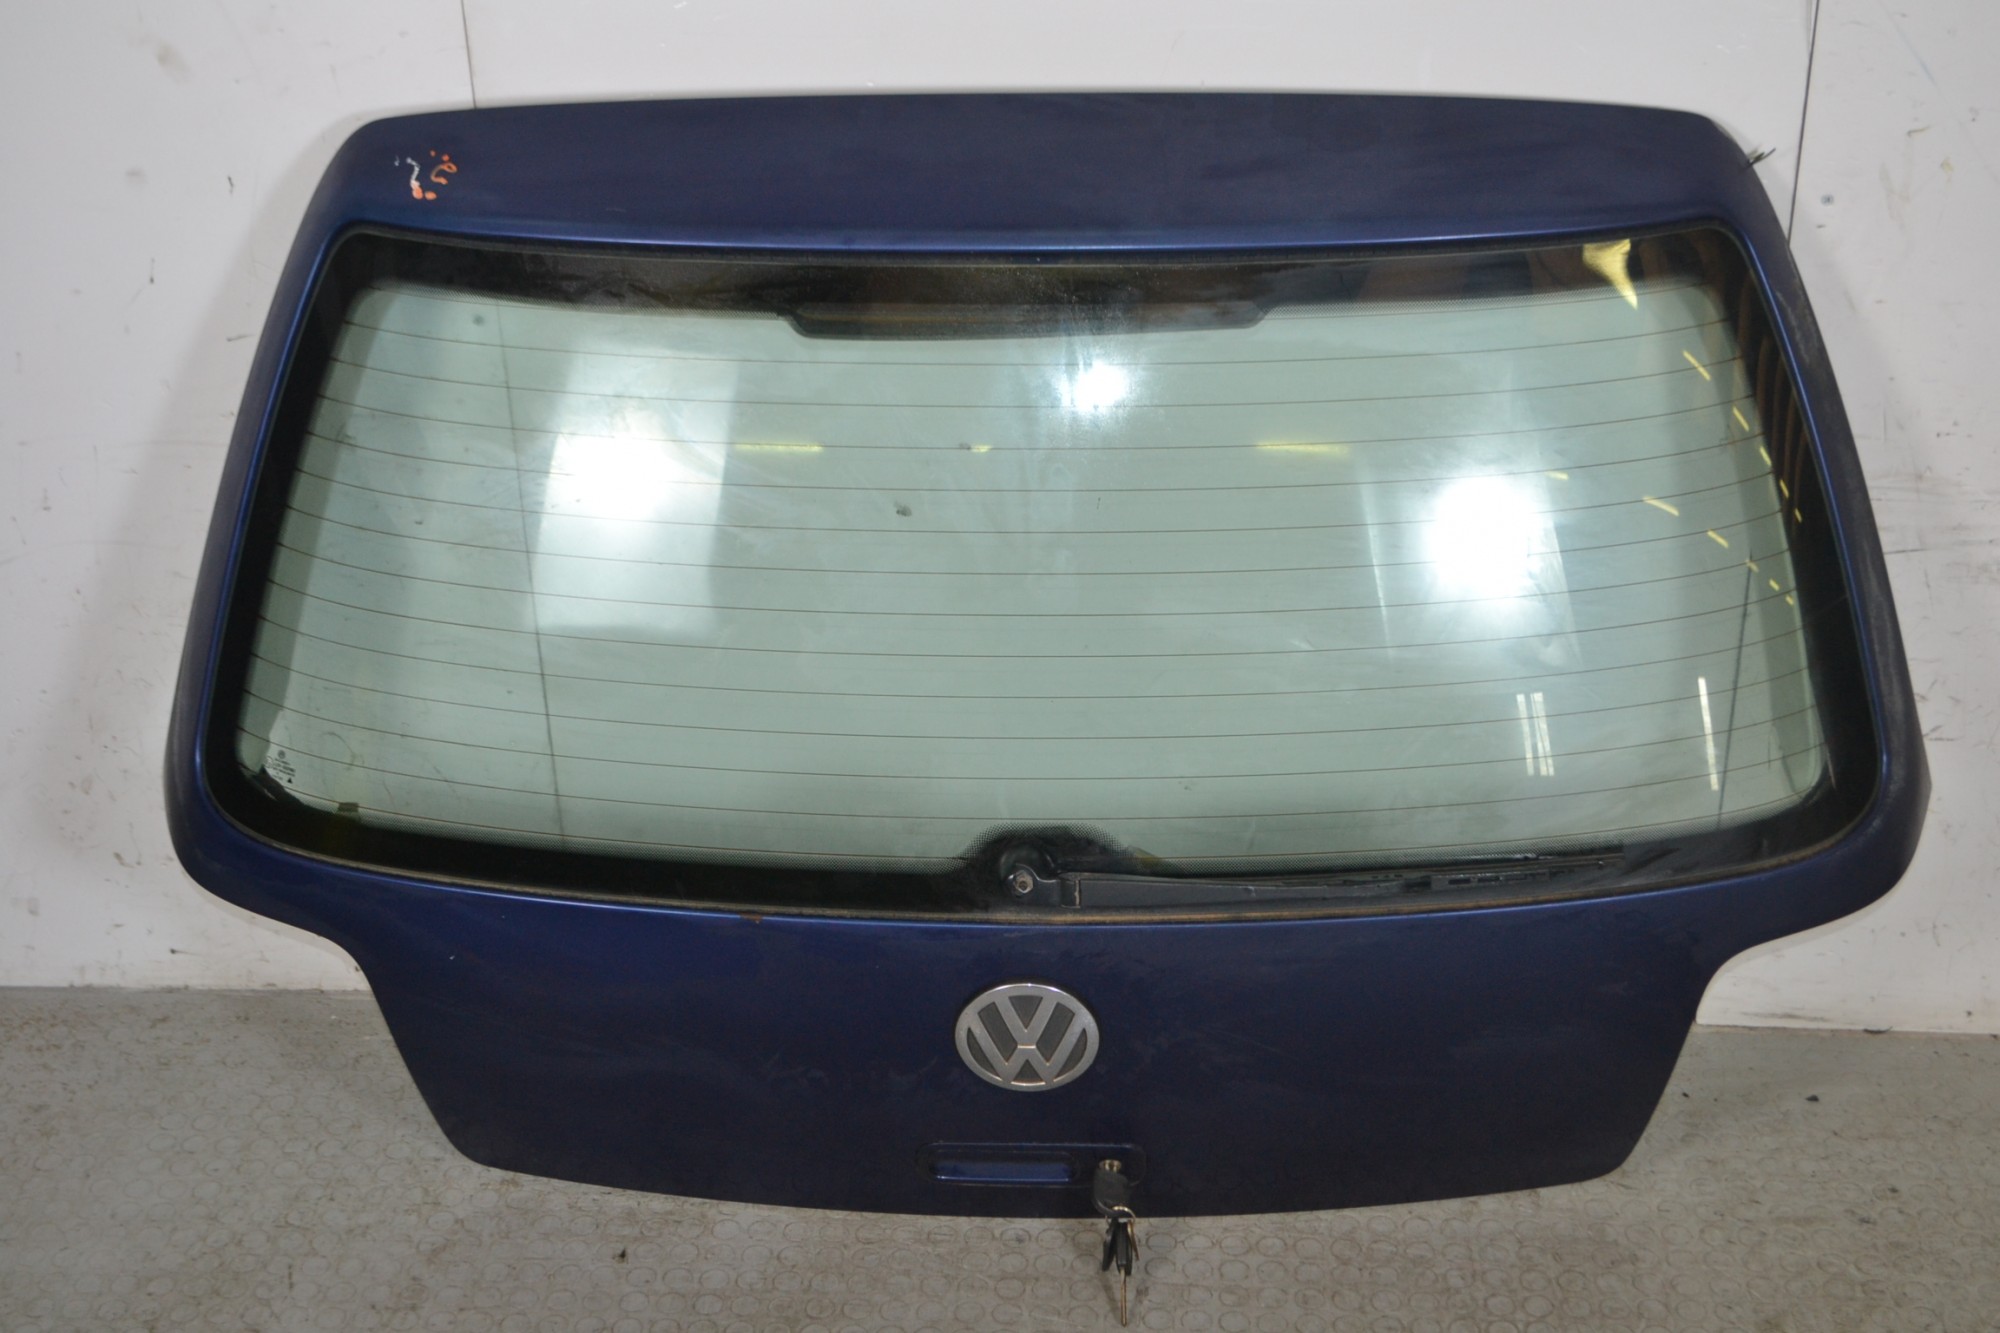 Portellone bagagliaio posteriore Volkswagen Golf IV Dal 1997 al 2004 Blu  1664372569573